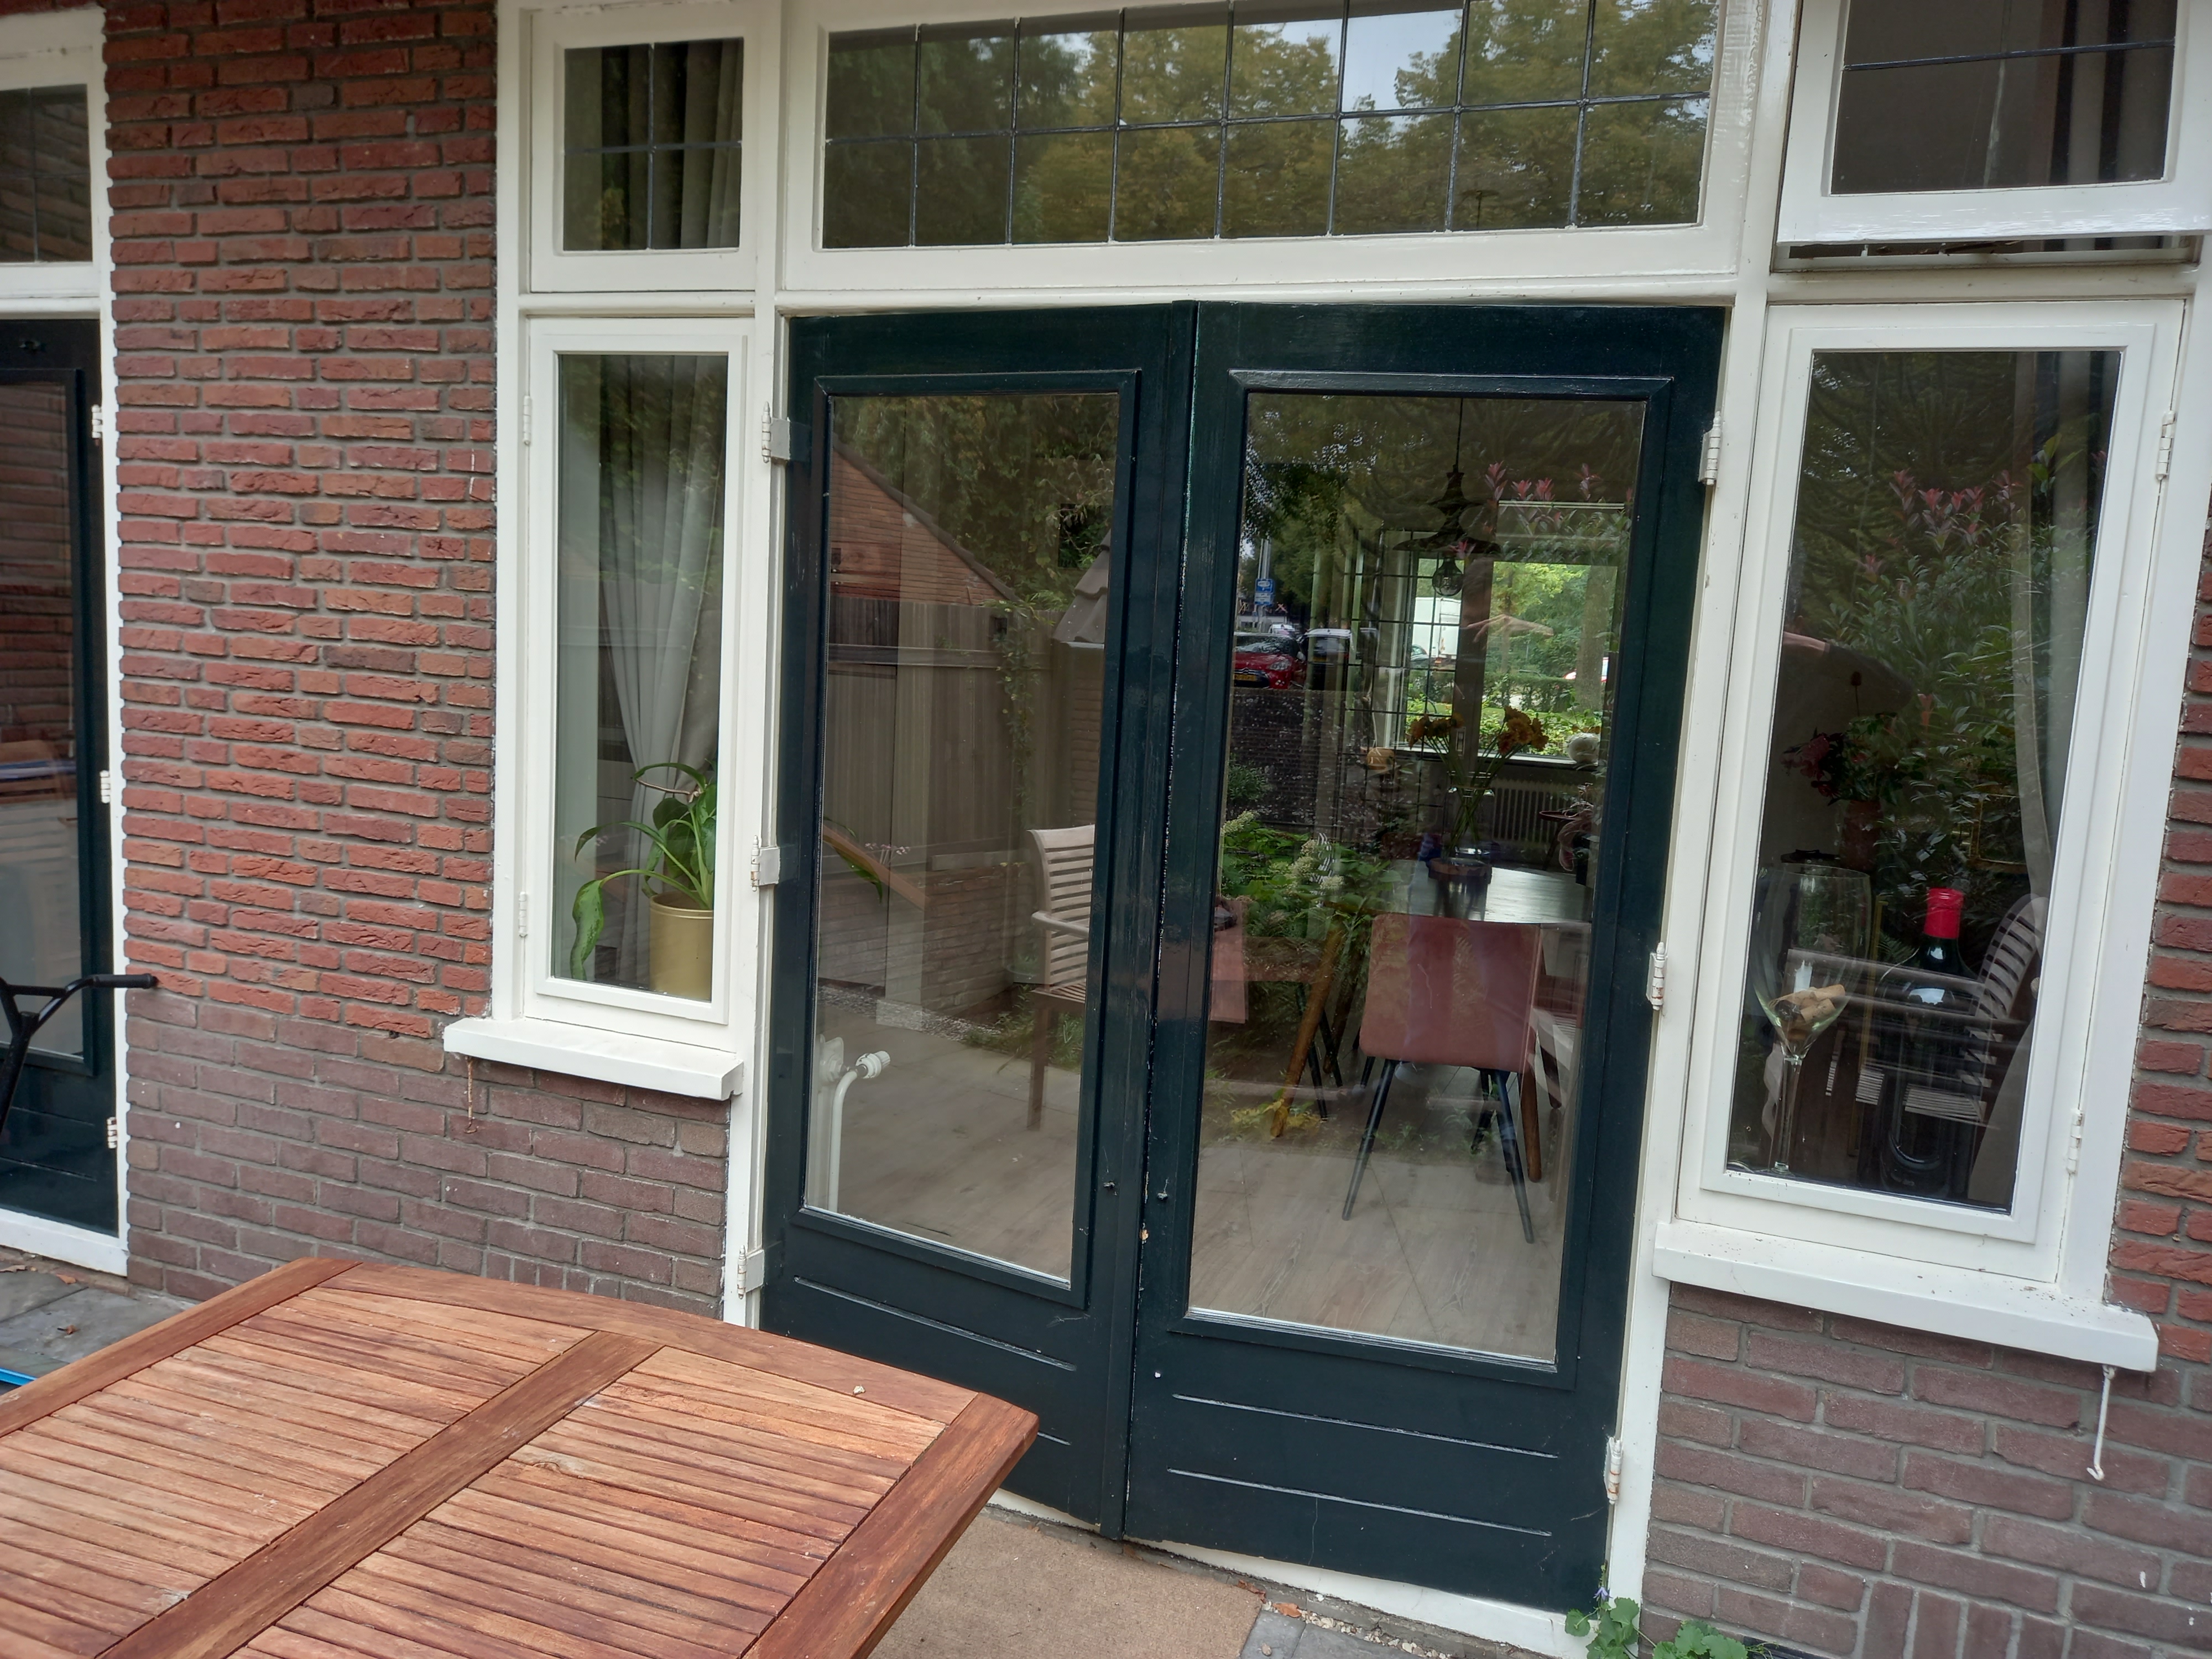 Foto van openslaande deuren met aan beide zijden smalle ramen.